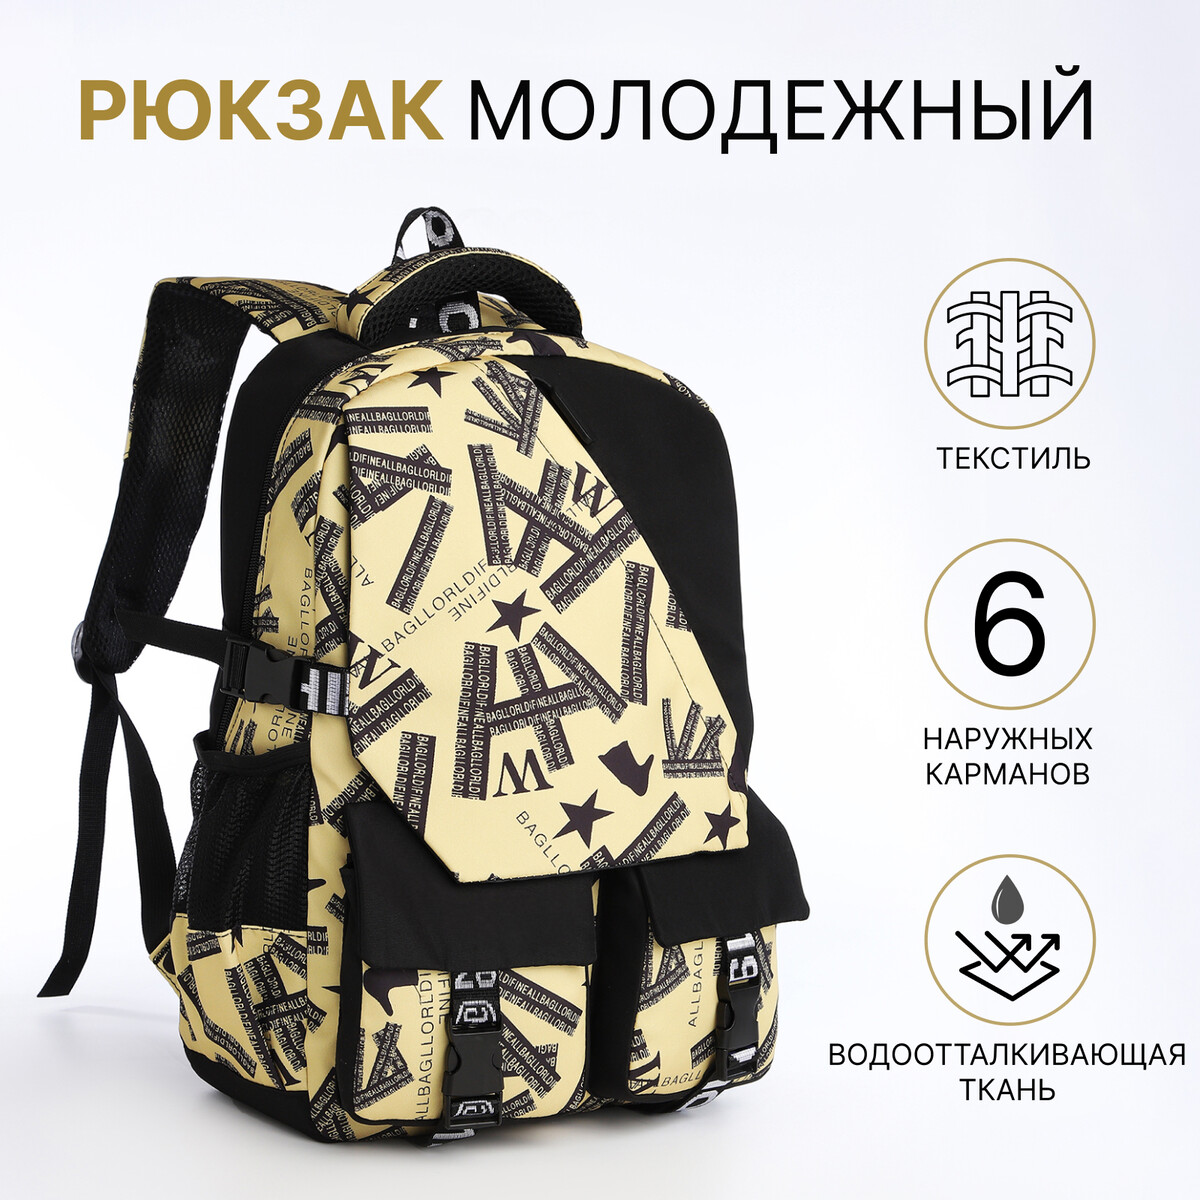 Рюкзак школьный на молнии, 5 карманов, цвет черный/желтый